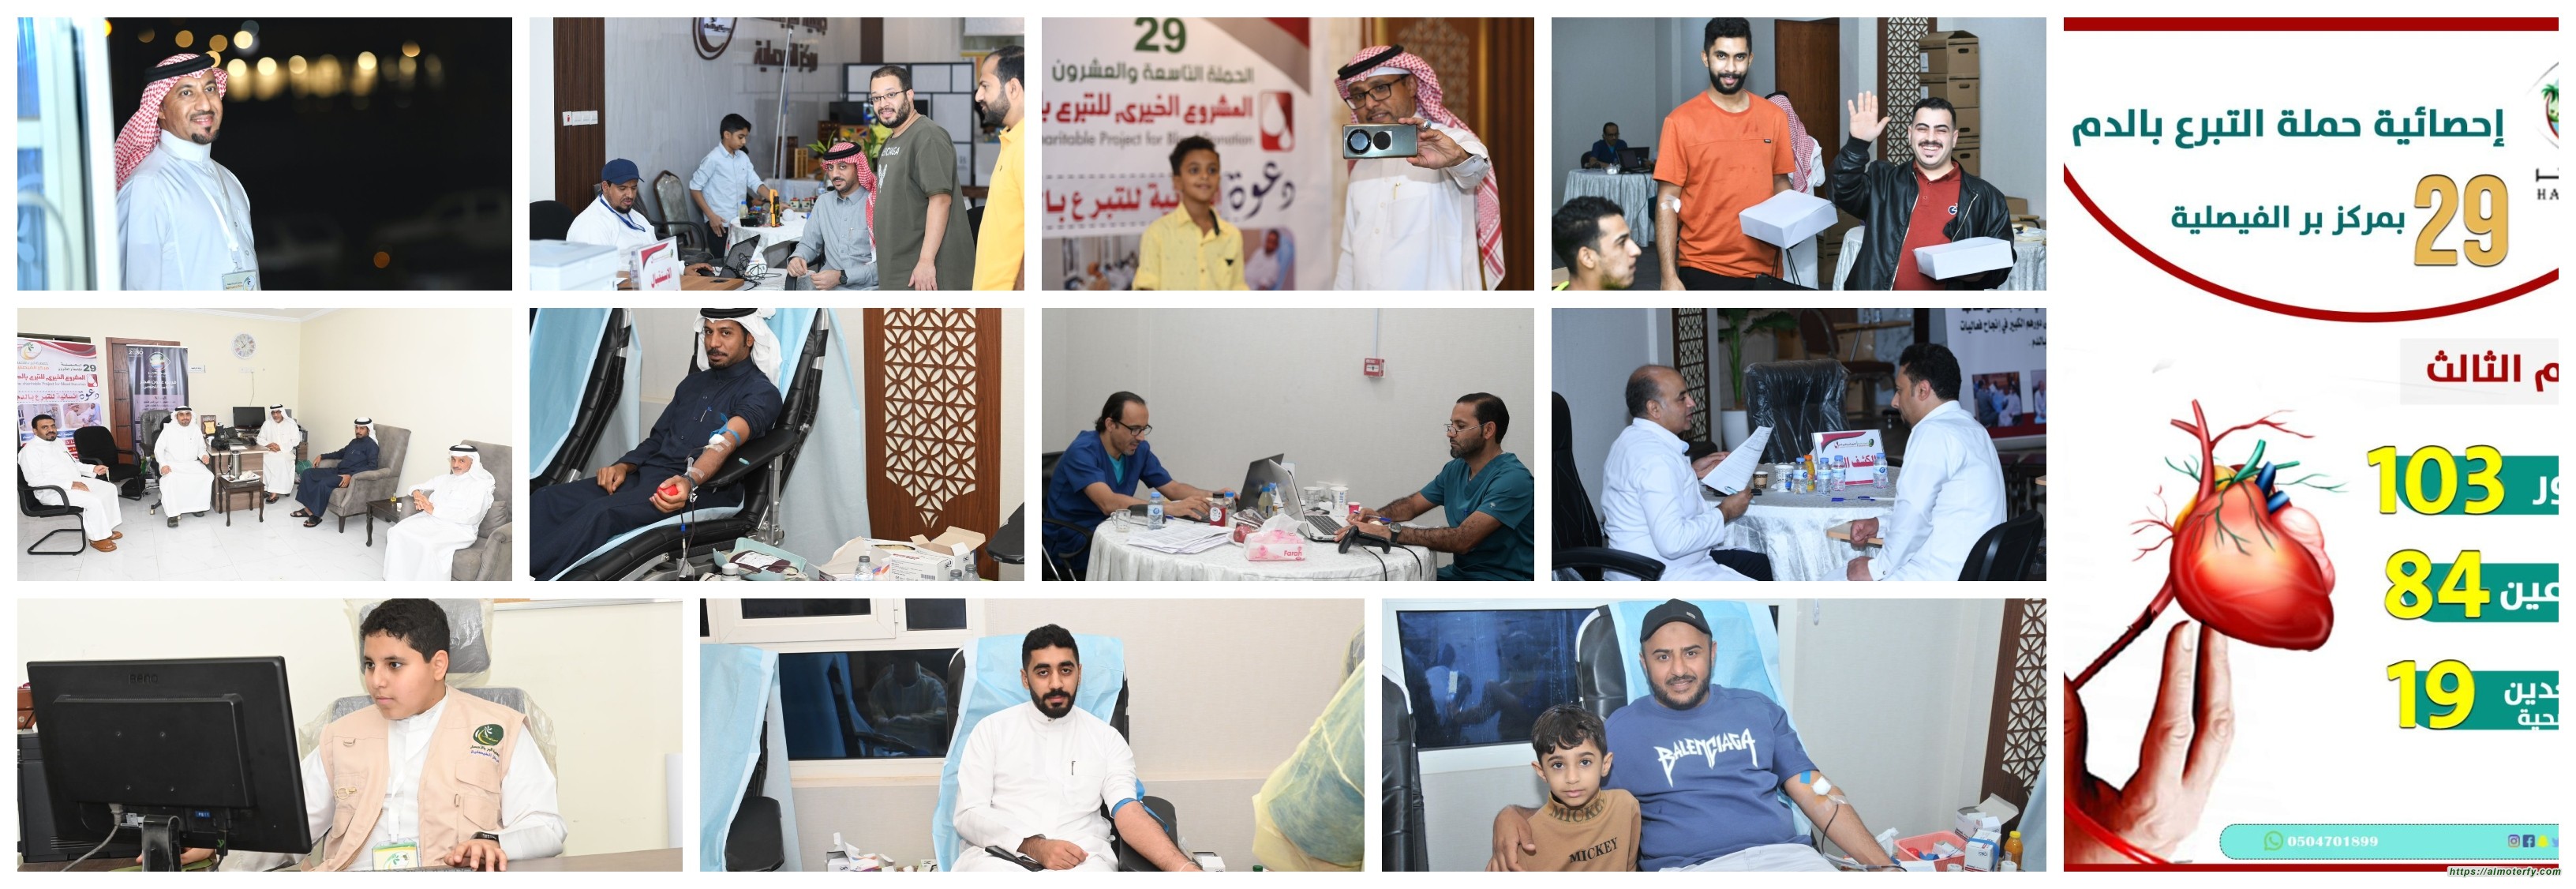 348 متبرع ينجحون حملة التبرع بالدم في برالفيصلية